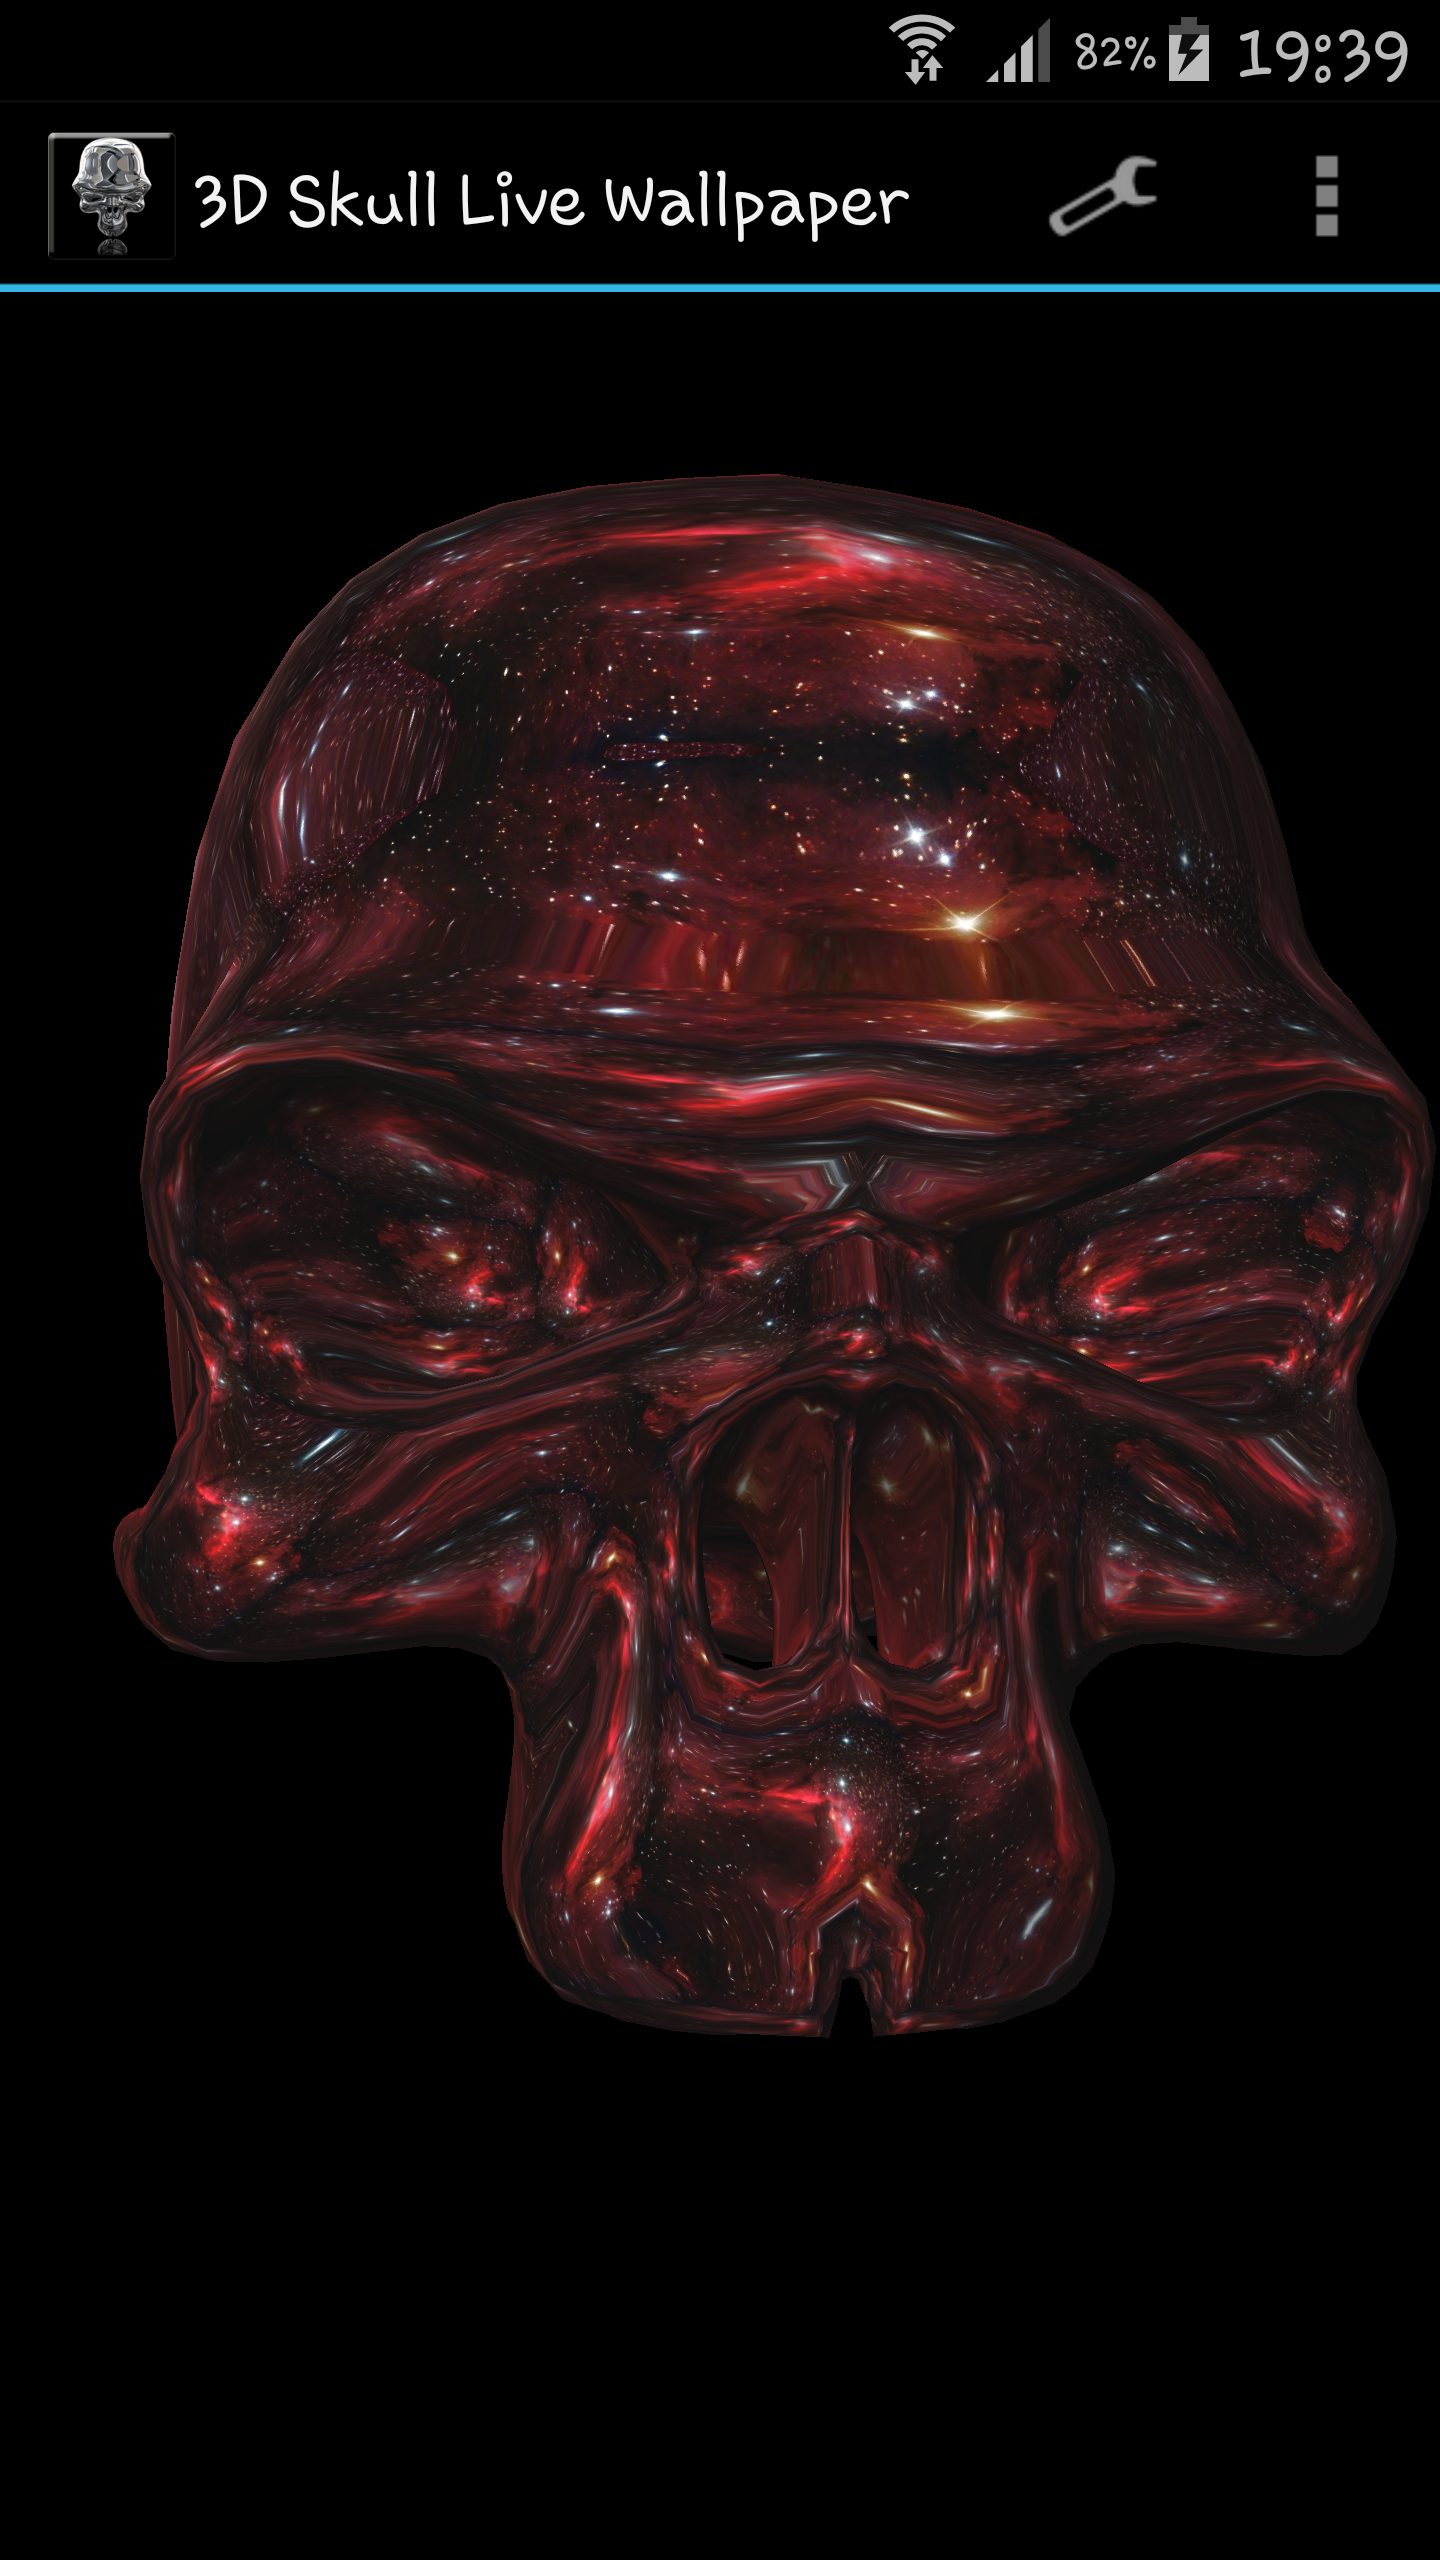 cranio live wallpaper 3d,testa,cranio,mascella,osso,personaggio fittizio